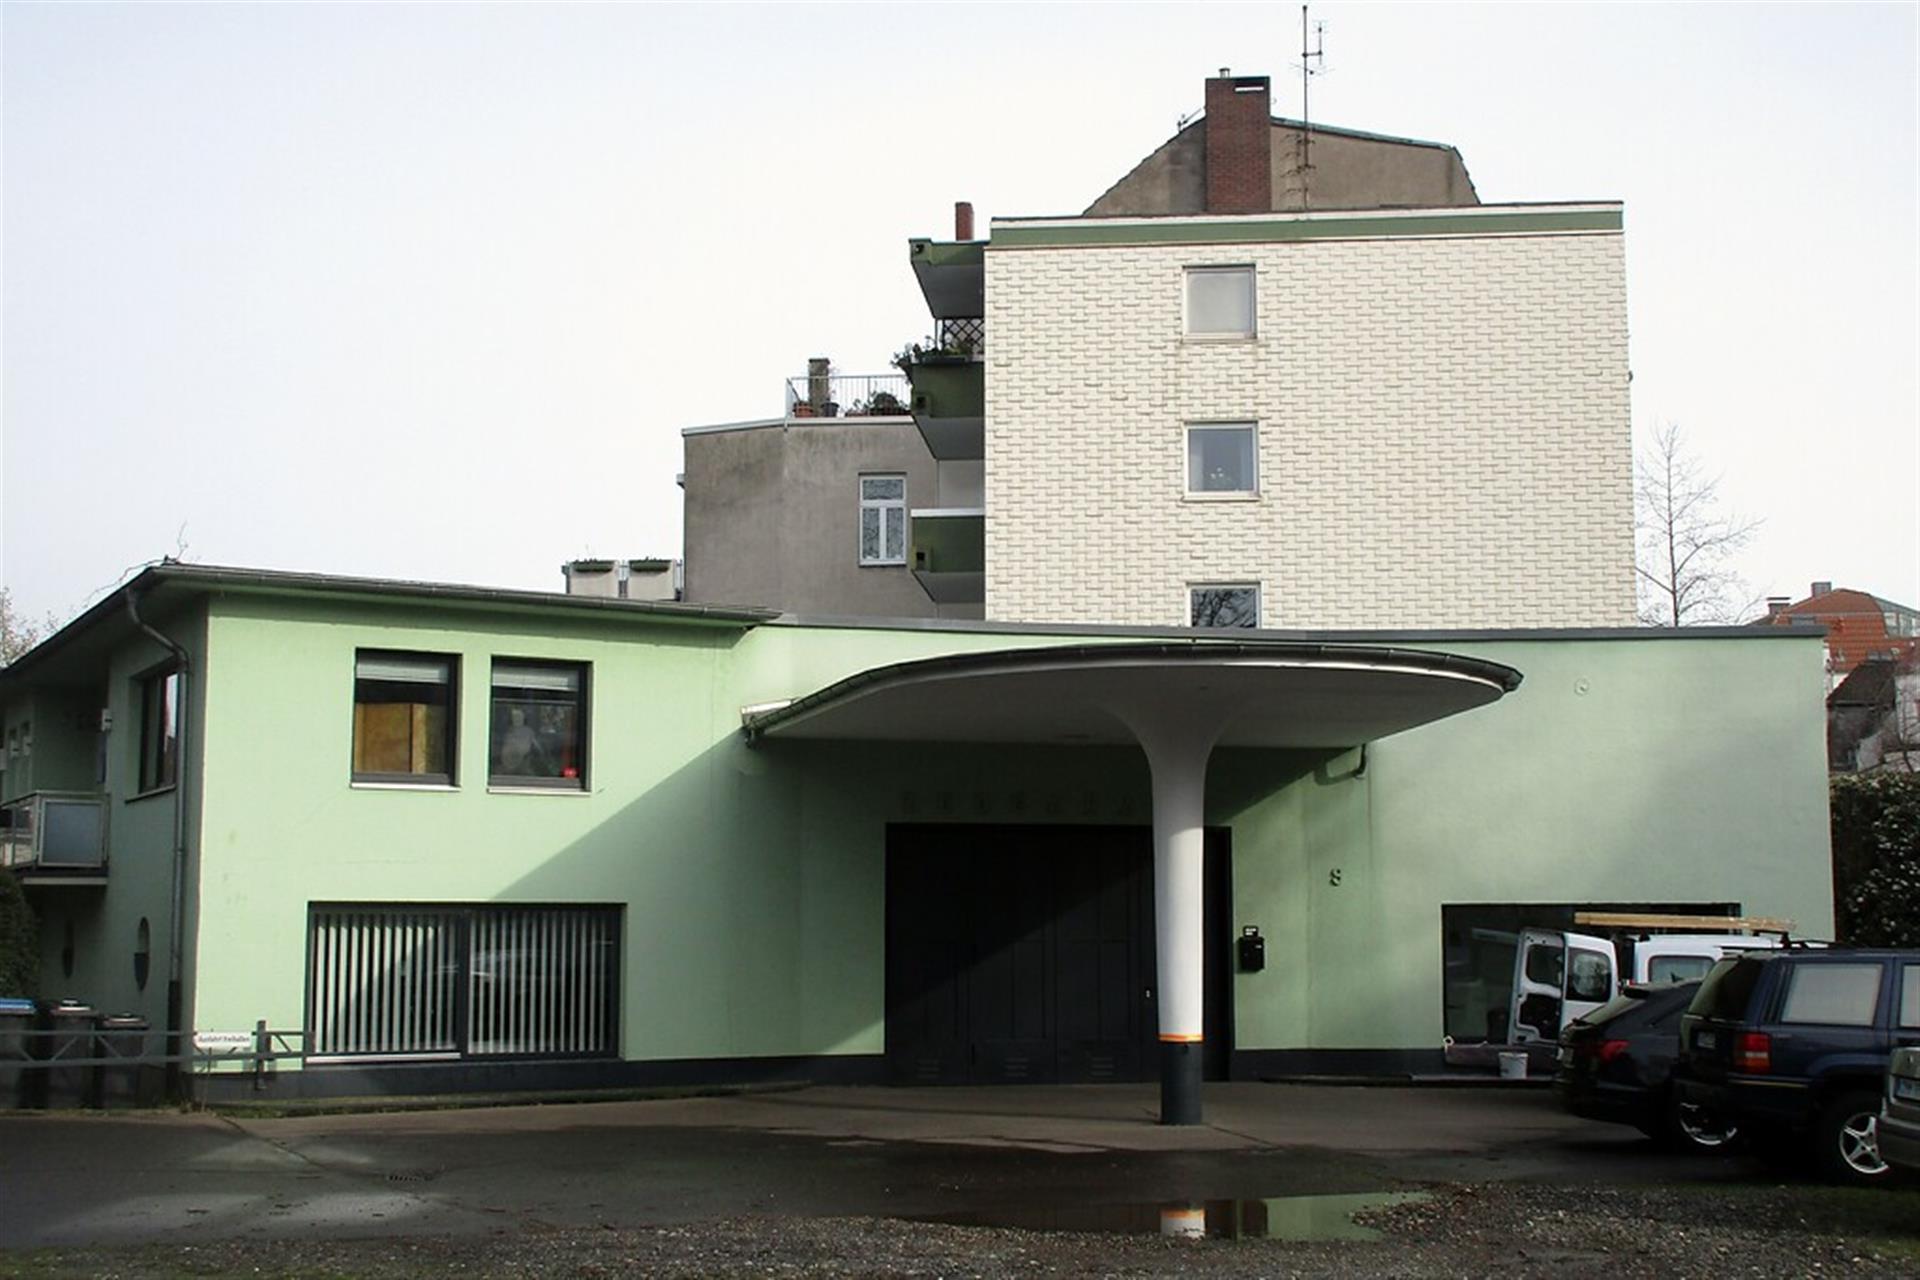 Gebäude der früheren Tankstelle "Zoogarage" in der Stammheimer Straße in Köln-Riehl (2020). &copy; Knöchel, Franz-Josef / Landschaftsverband Rheinland, CC-BY